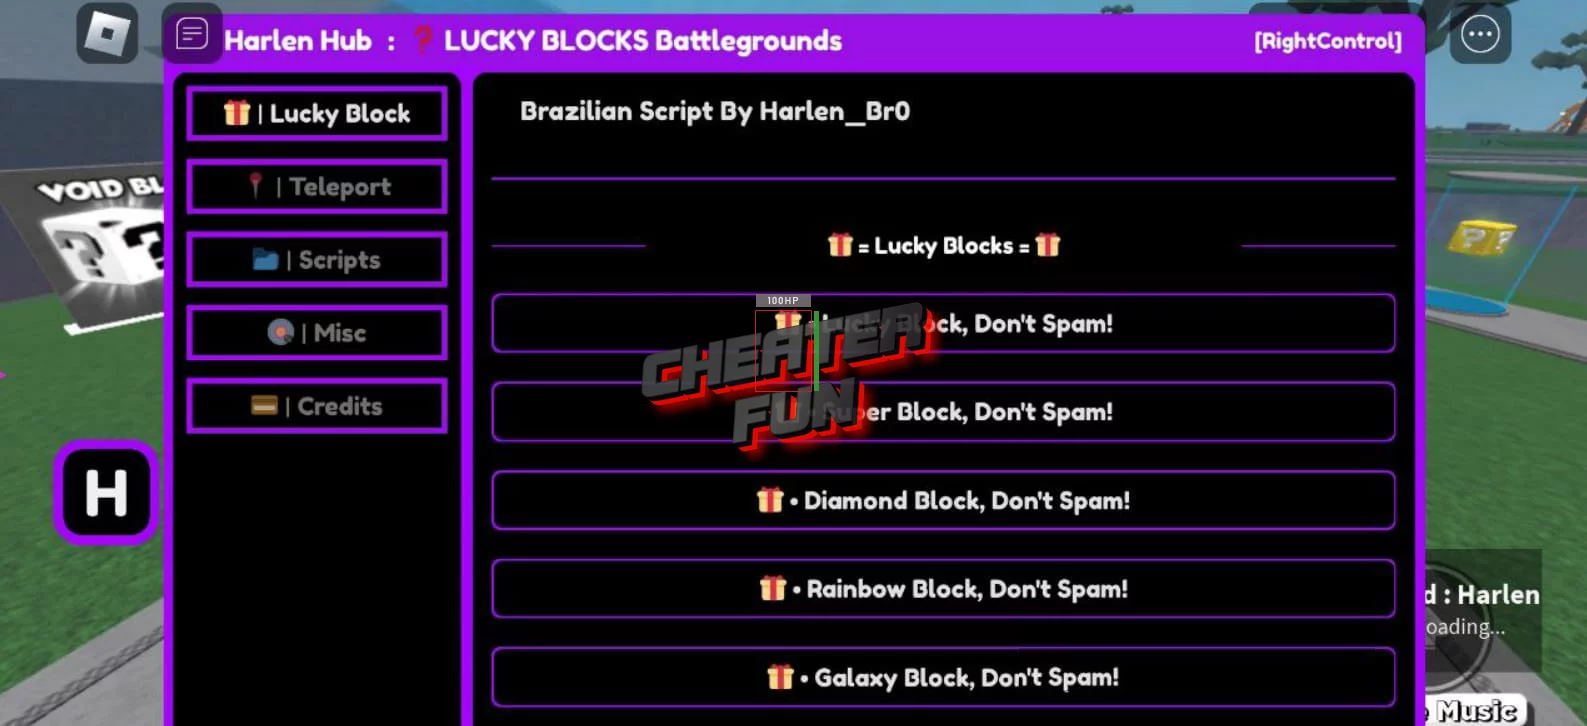 LUCKY BLOCKS Battlegrounds GUI